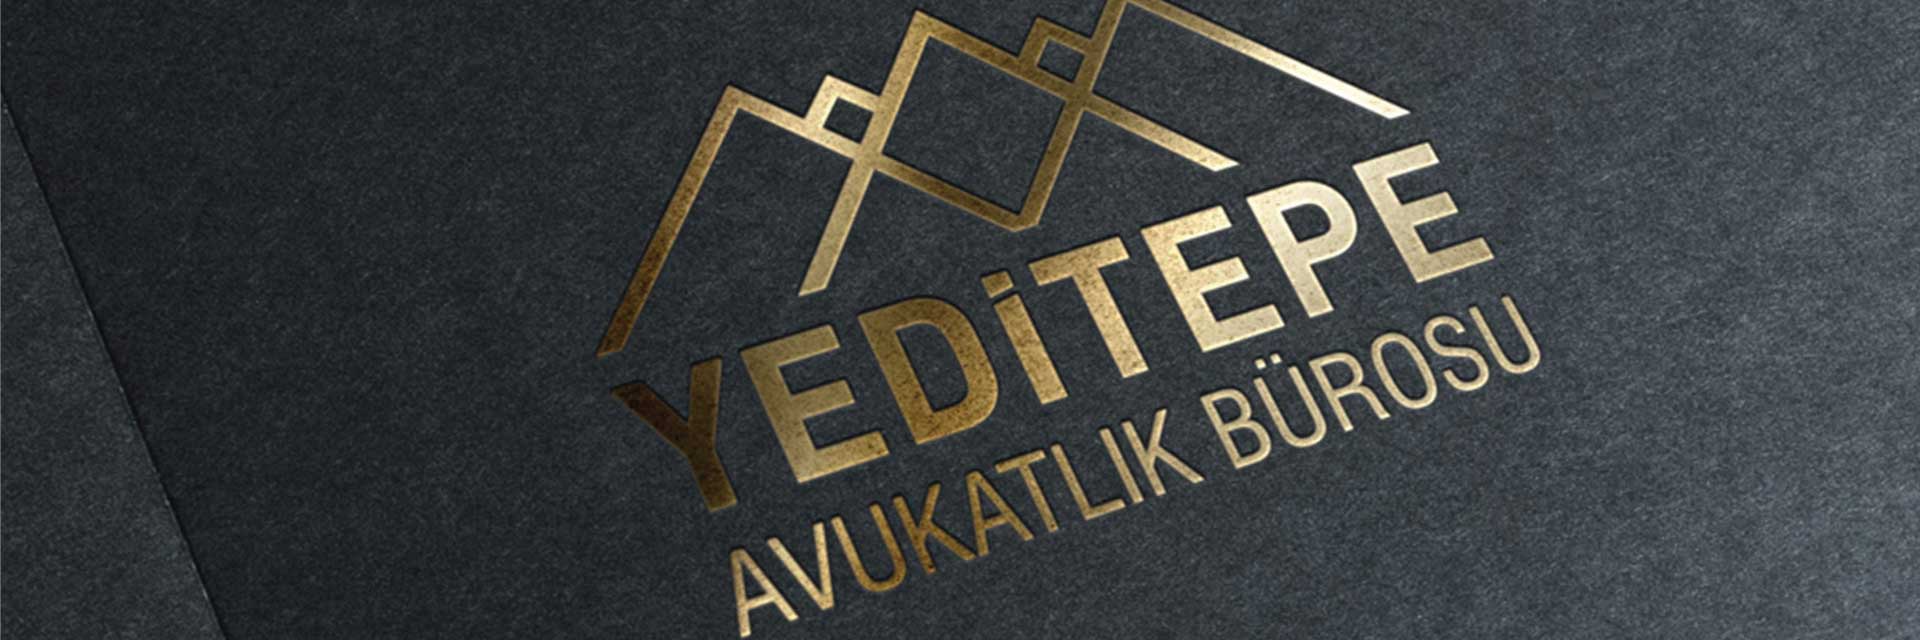 Yeditepe Avukatlık Bürosu